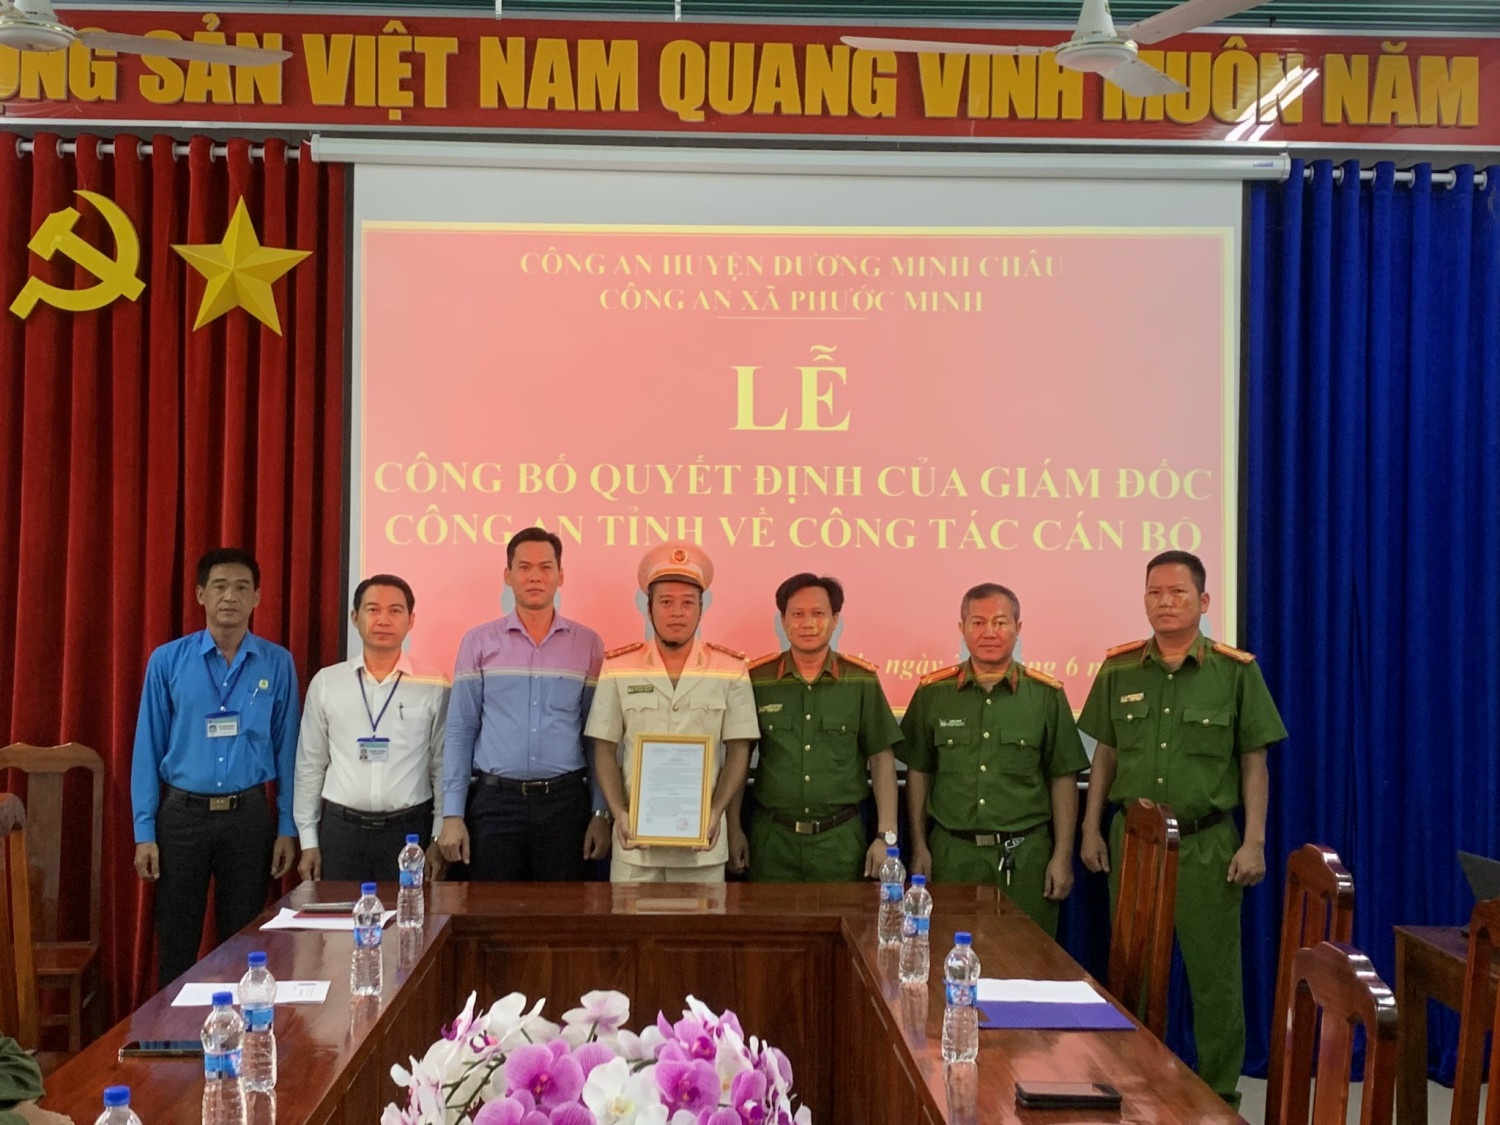 Công an huyện Dương Minh Châu công bố quyết định điều động cán bộ  Phó trưởng công an xã Phước Minh